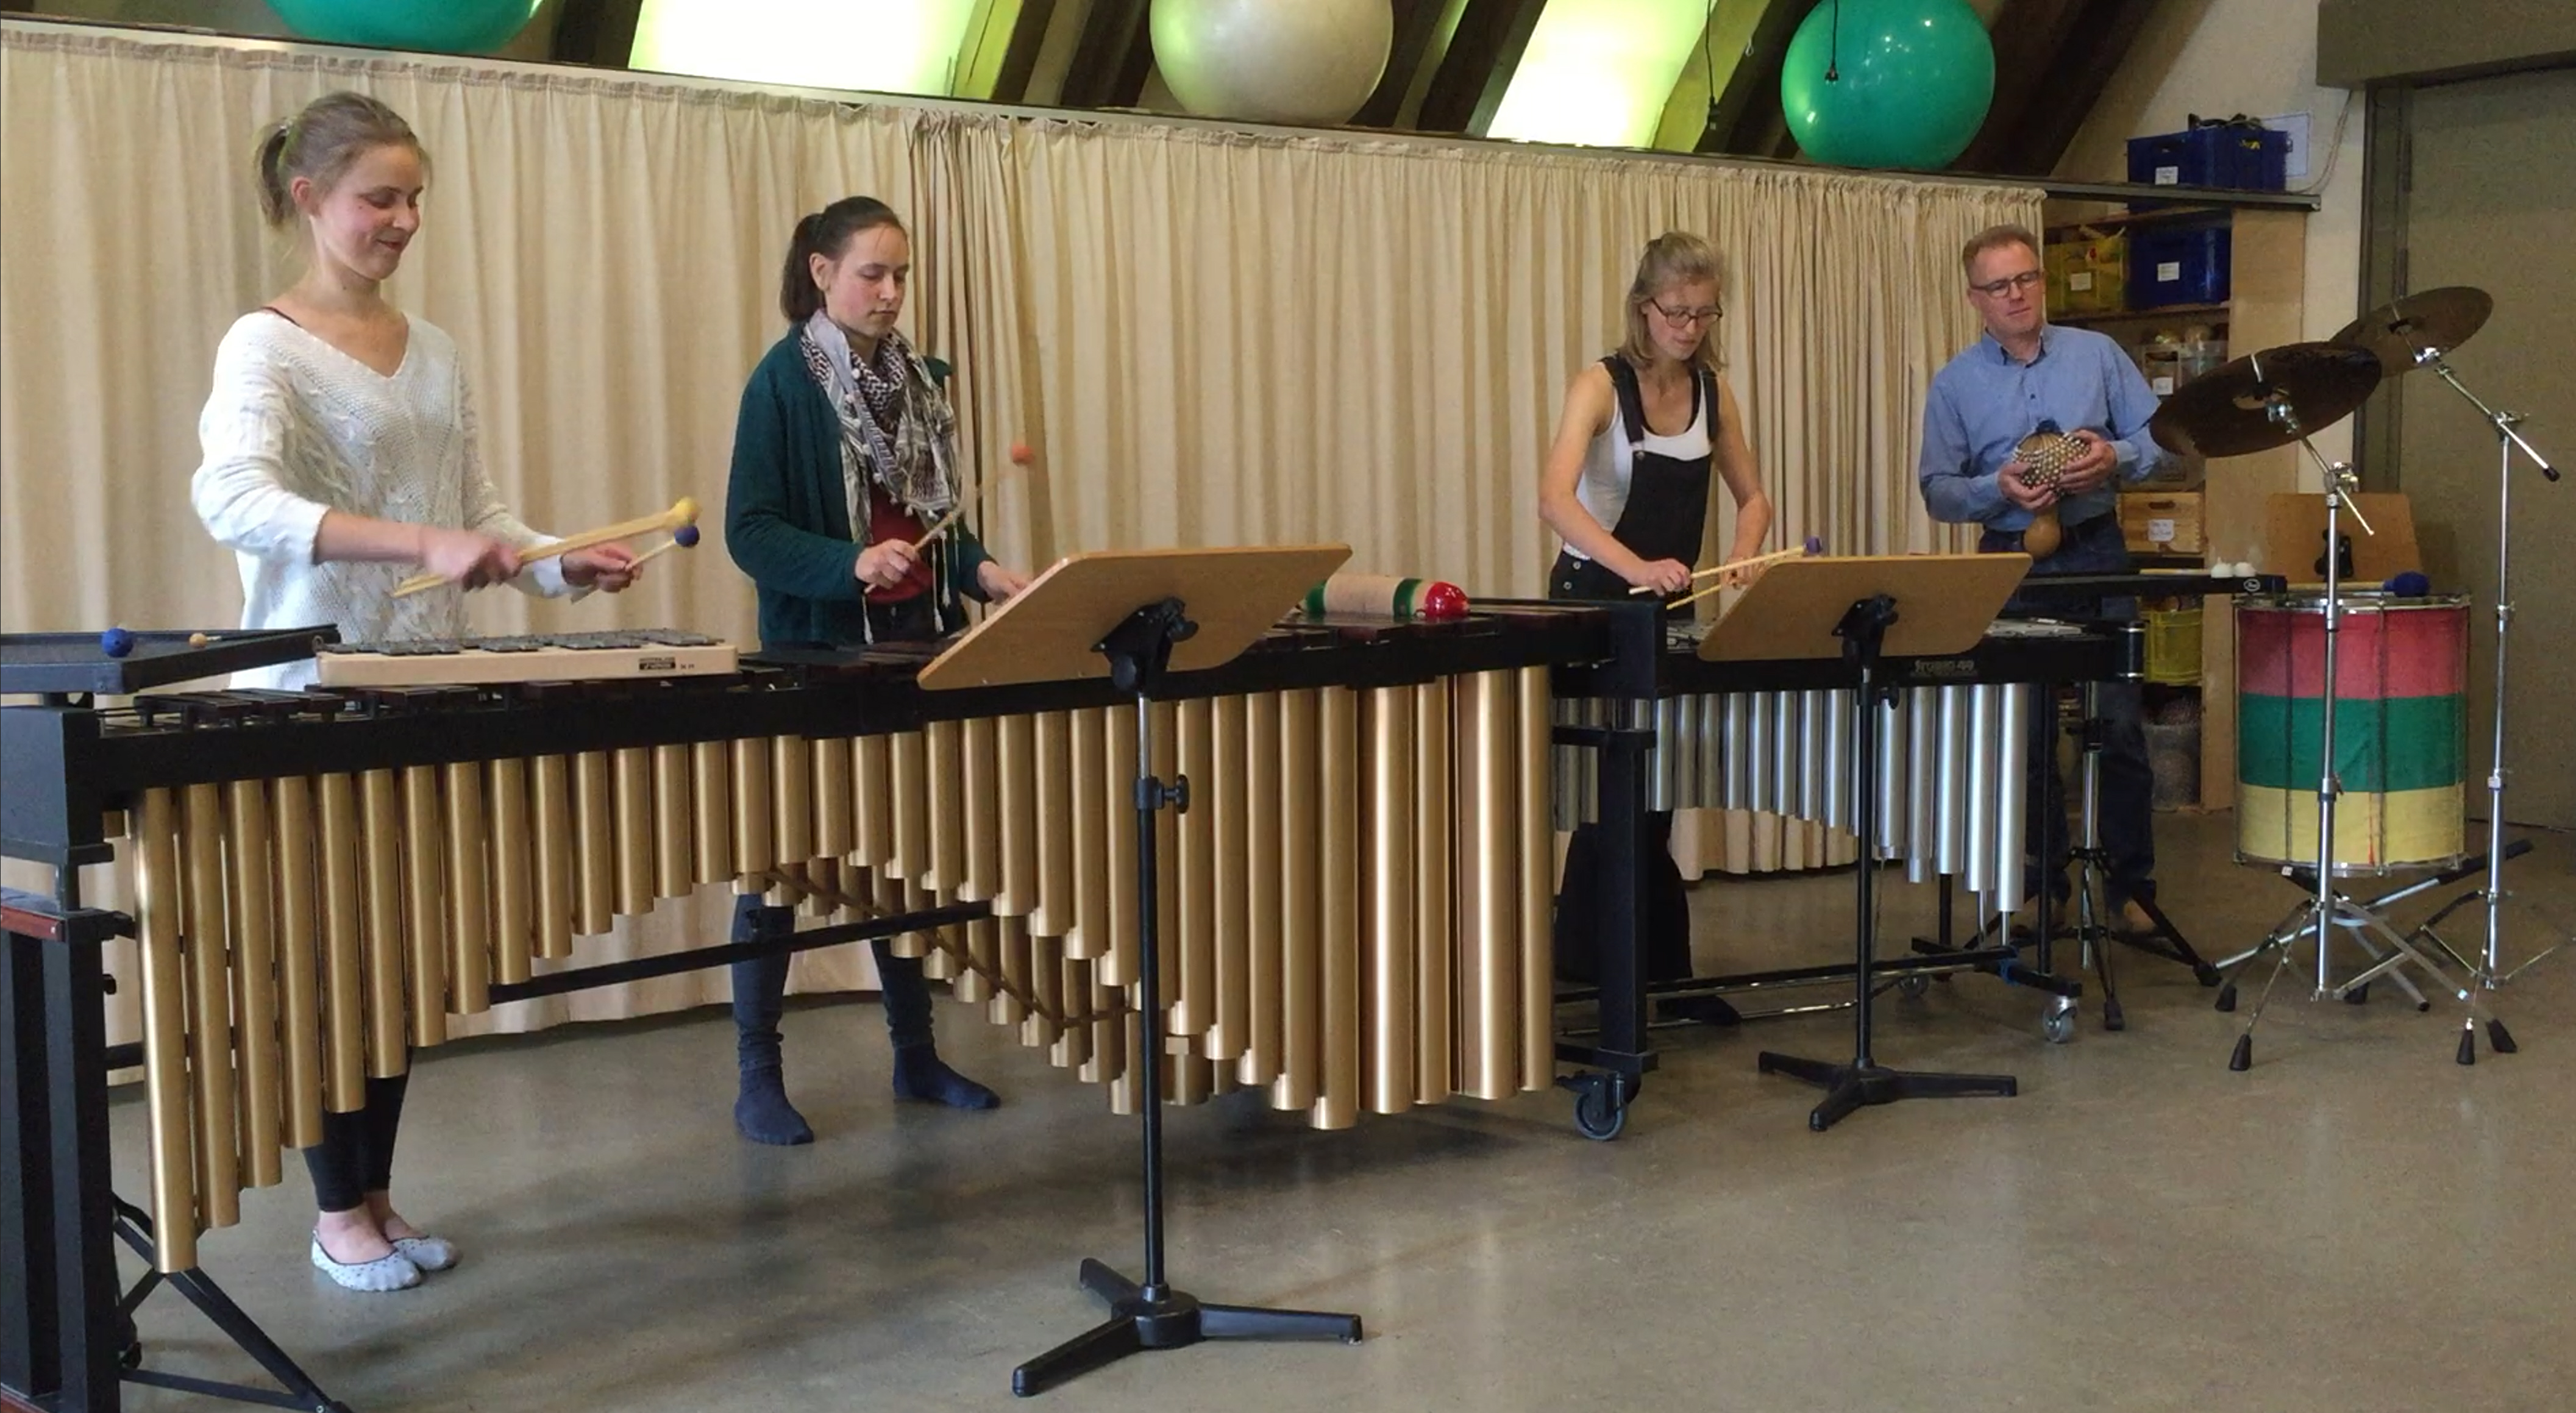 Ensemblespiel im Kurs "Schulische Musizierpraxis: Percussion 2" an der Musikhochschule Lübeck 2017